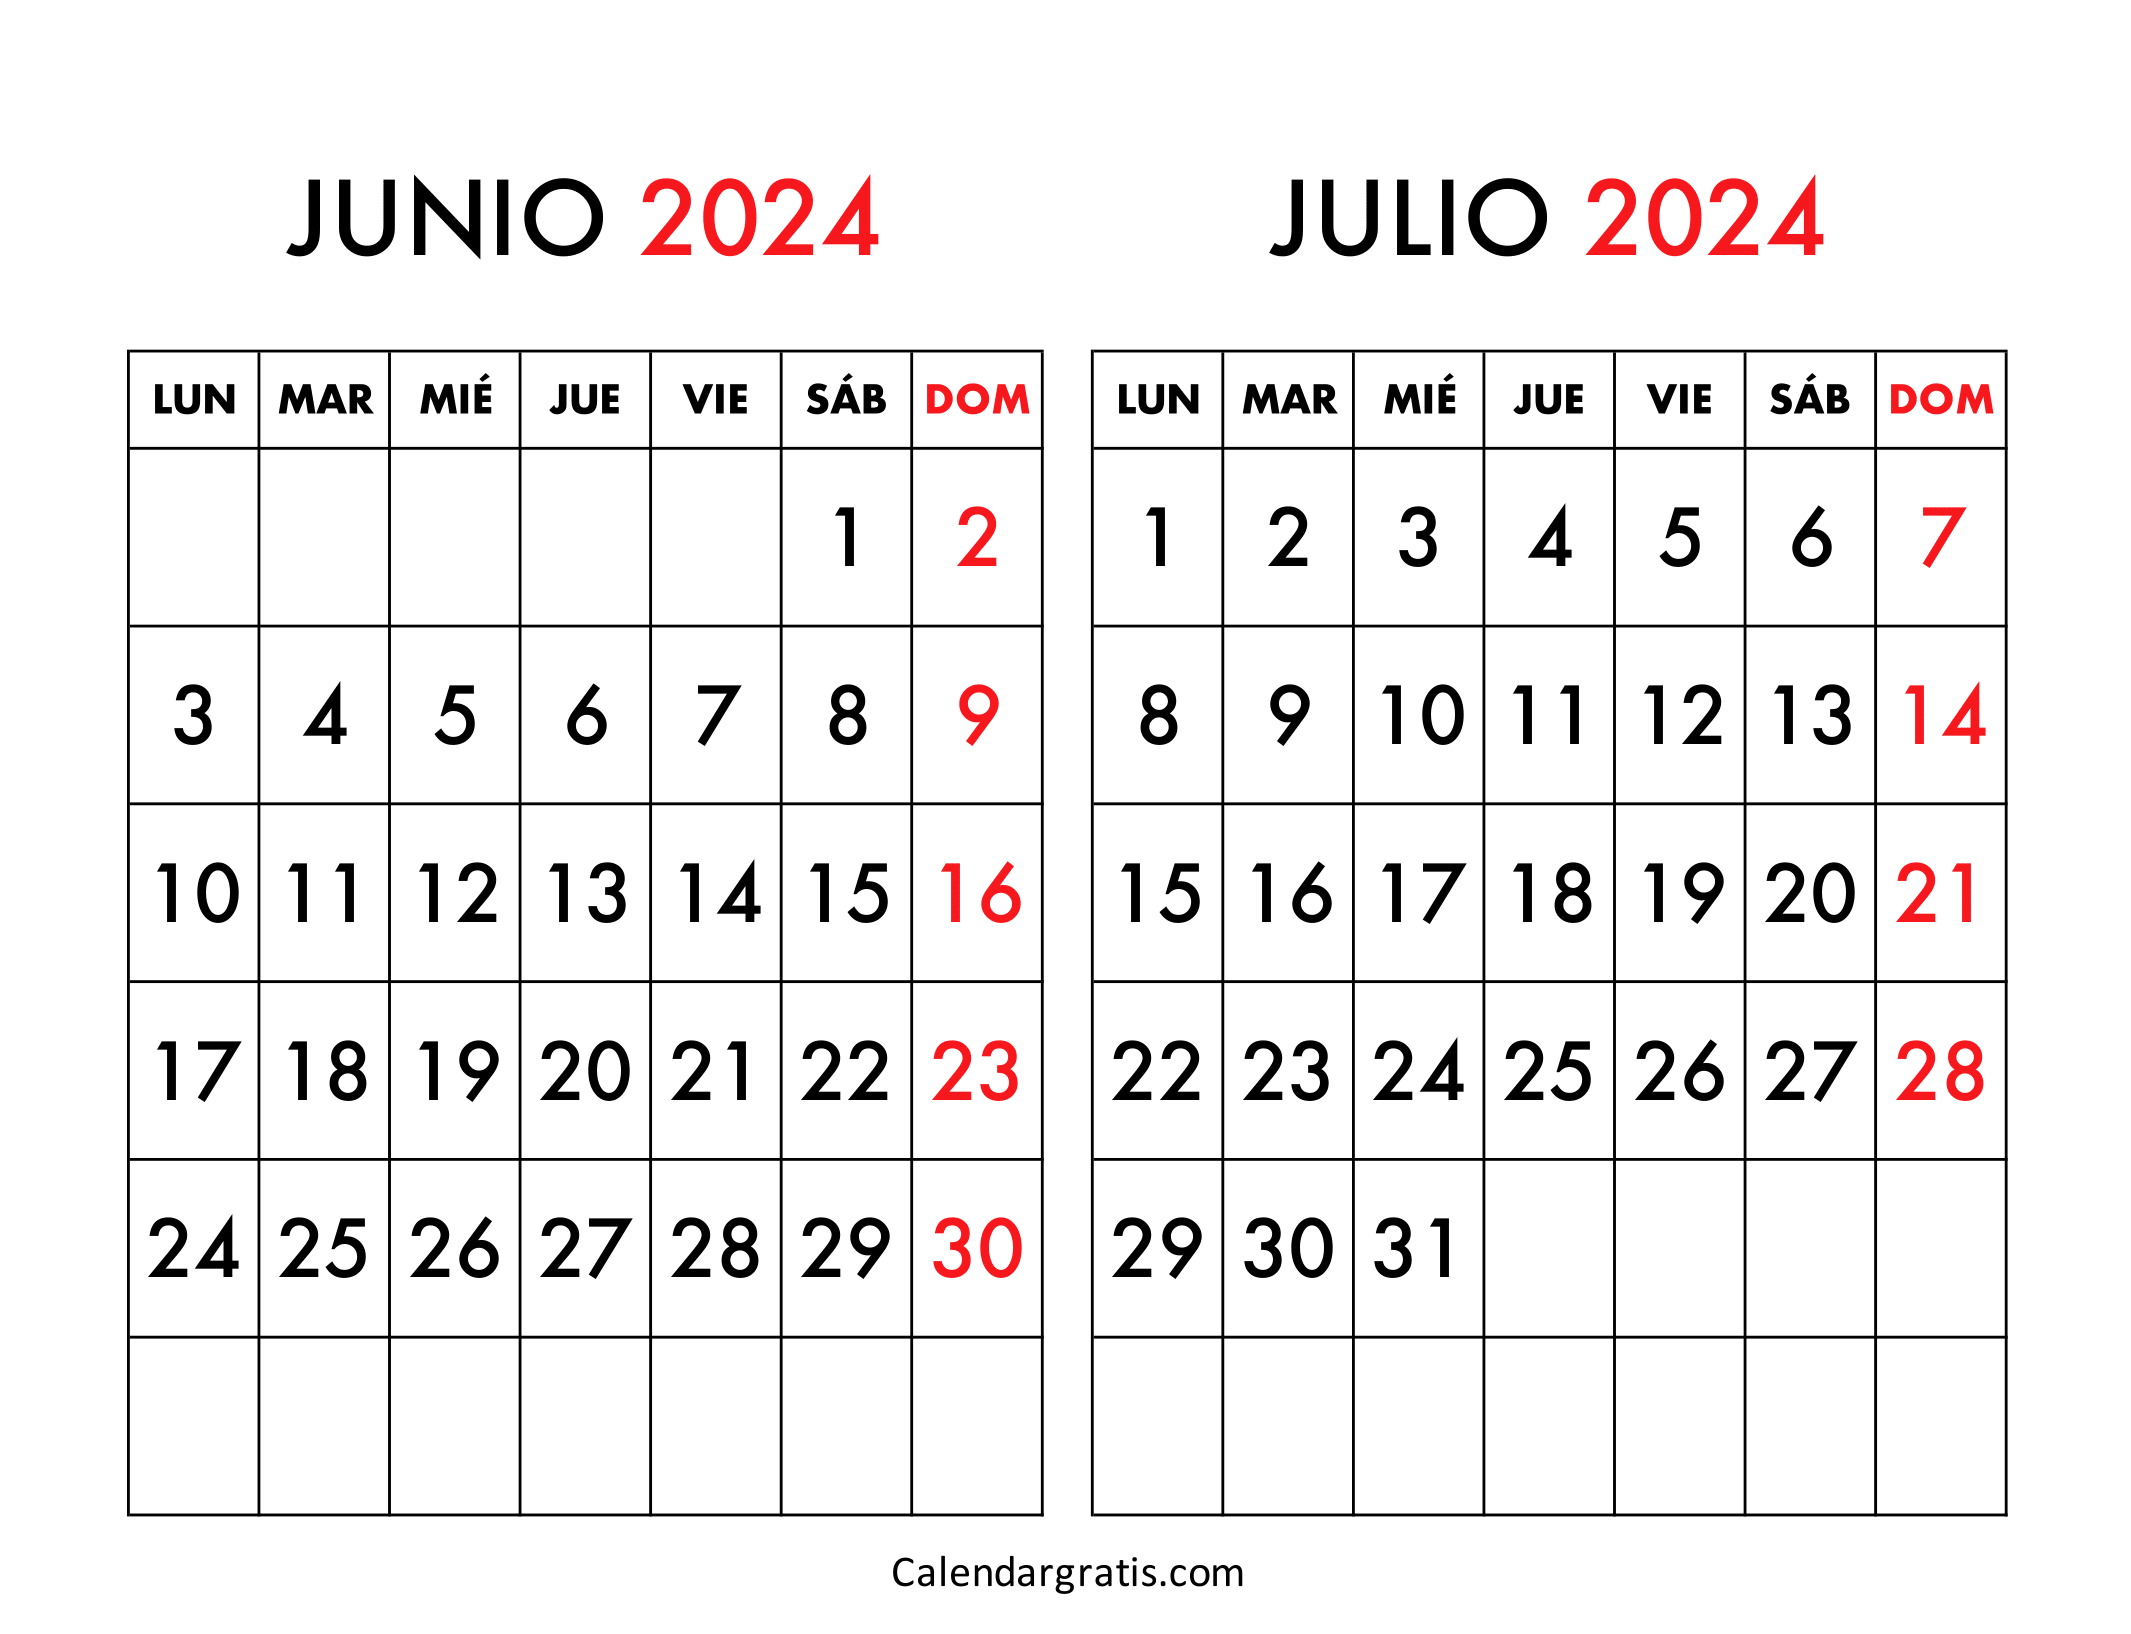 Calendario junio y julio 2024 España